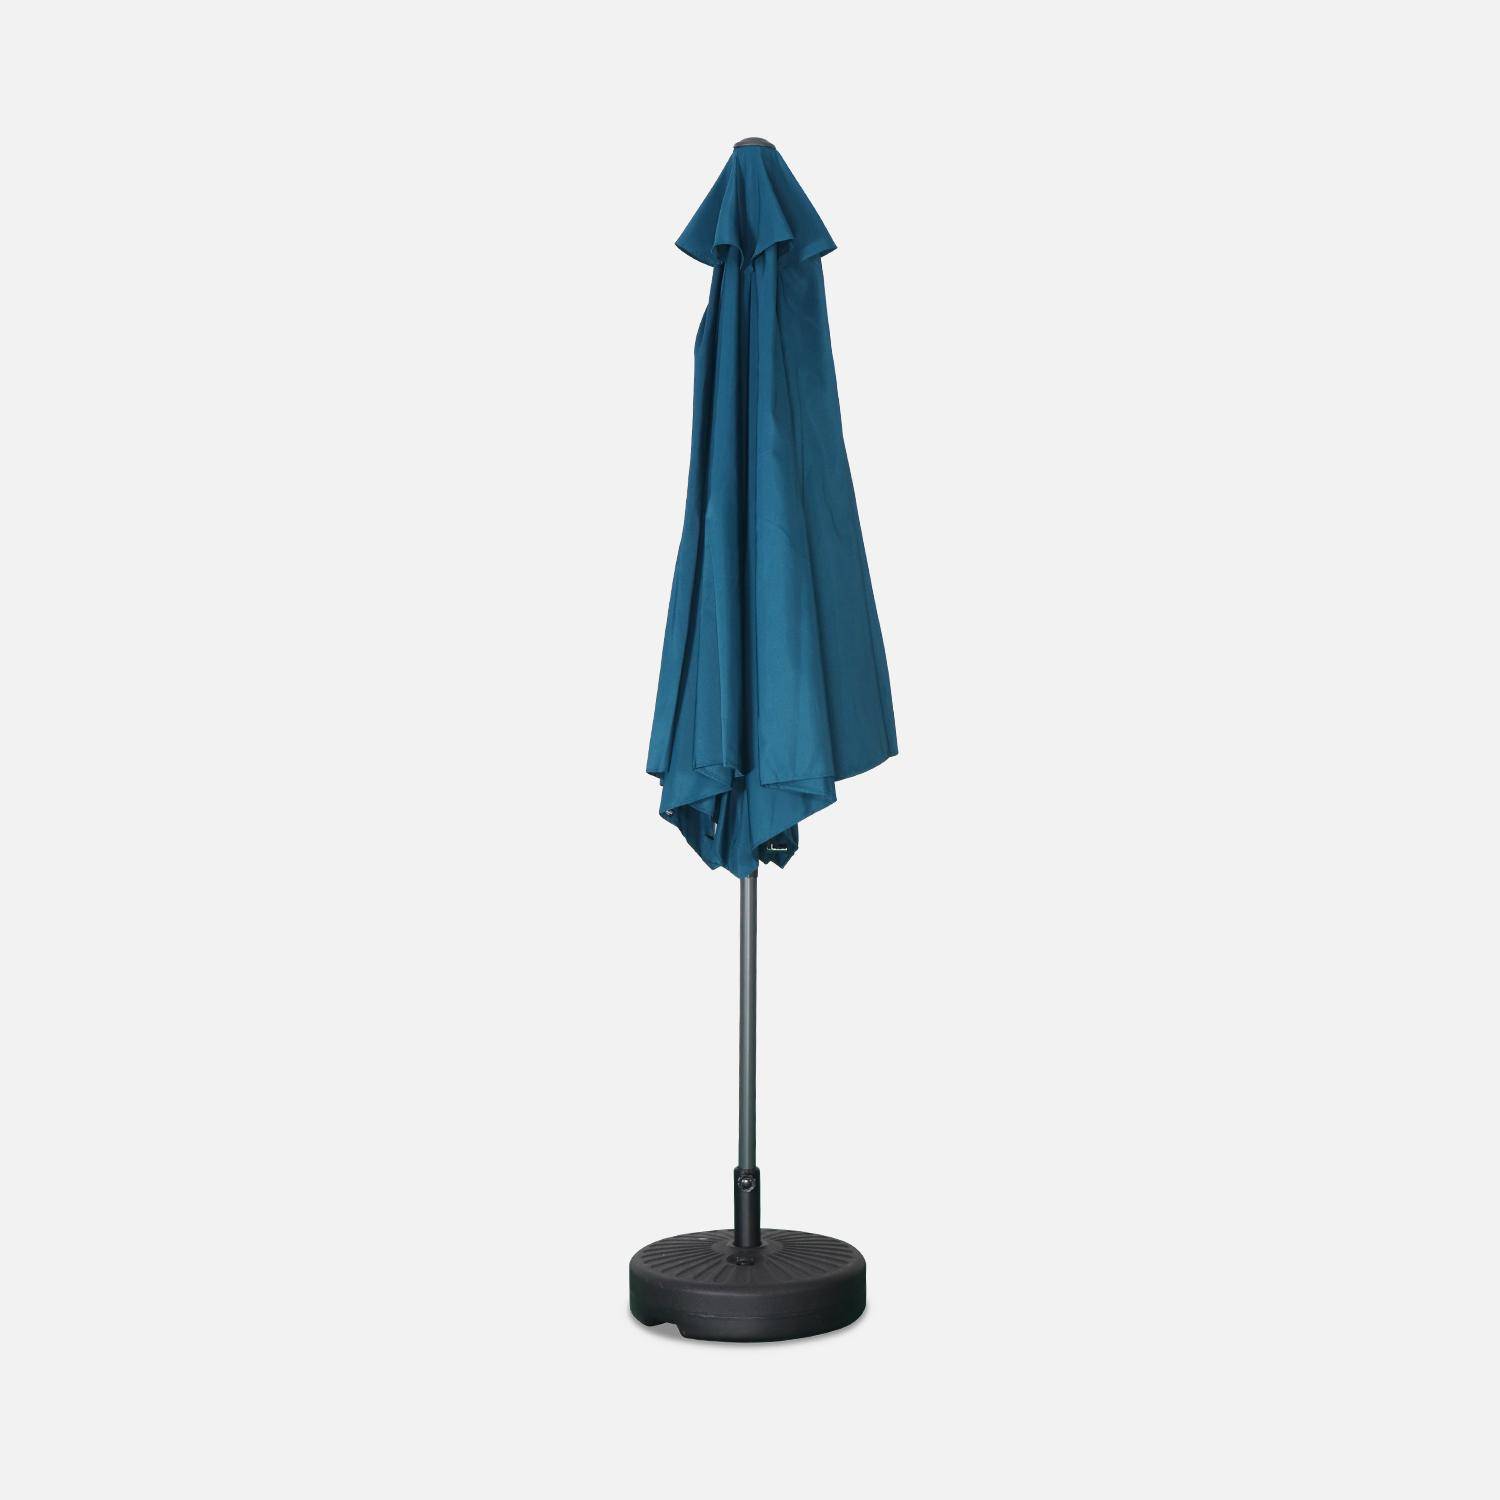 Parasol droit rond Ø300cm - Touquet Bleu canard - mât central en aluminium orientable et manivelle d'ouverture Photo3